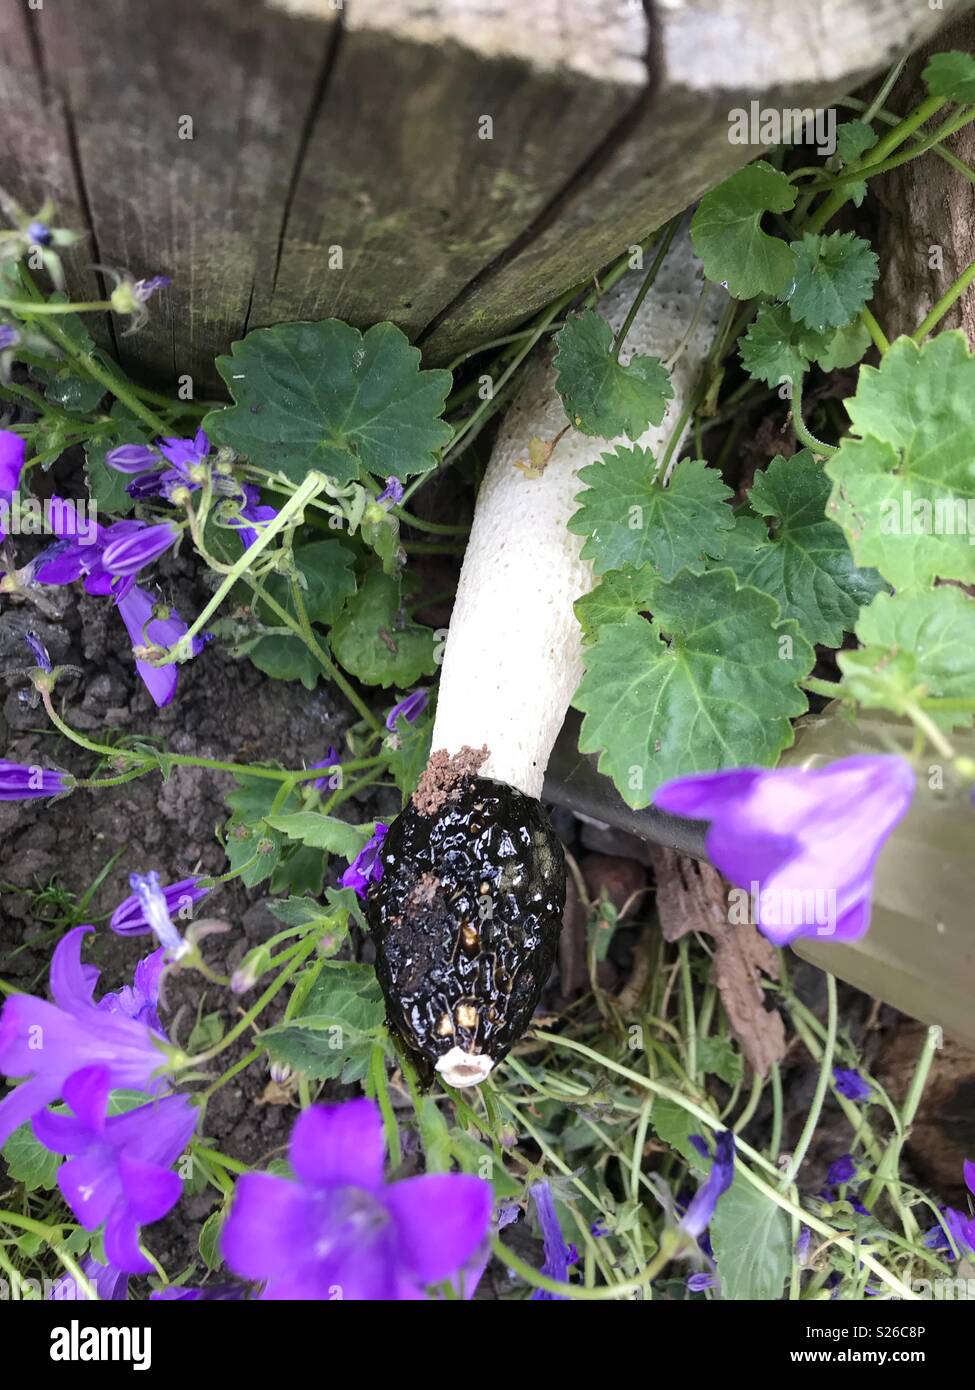 Rare Fungi found in garden Stock Photo